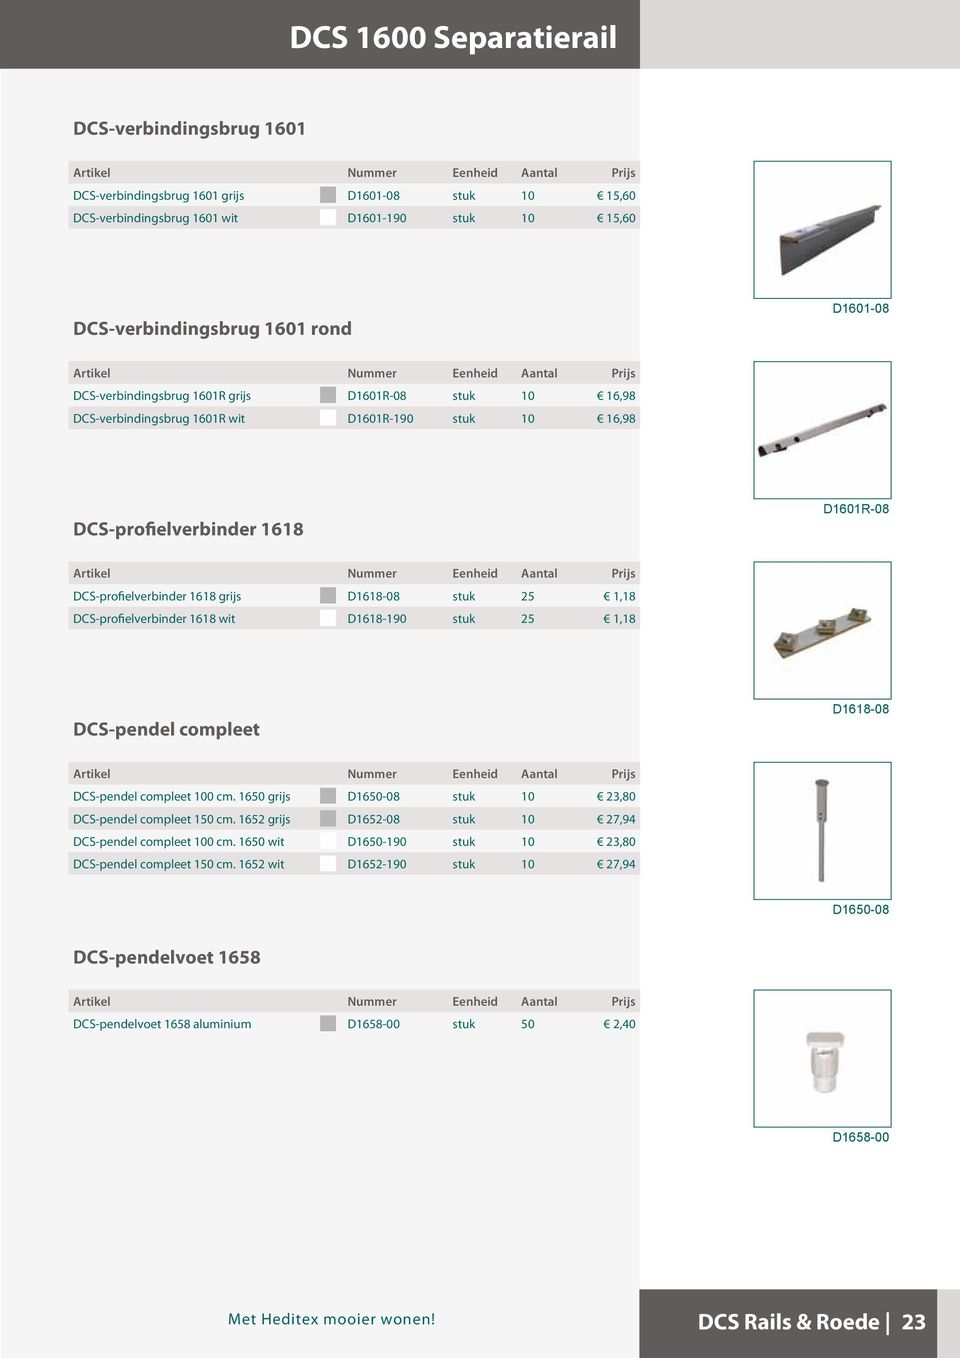 1,18 DCS-profielverbinder 1618 wit D1618-190 stuk 25 1,18 DCS-pendel compleet D1618-08 DCS-pendel compleet 100 cm. 1650 grijs D1650-08 stuk 10 23,80 DCS-pendel compleet 150 cm.